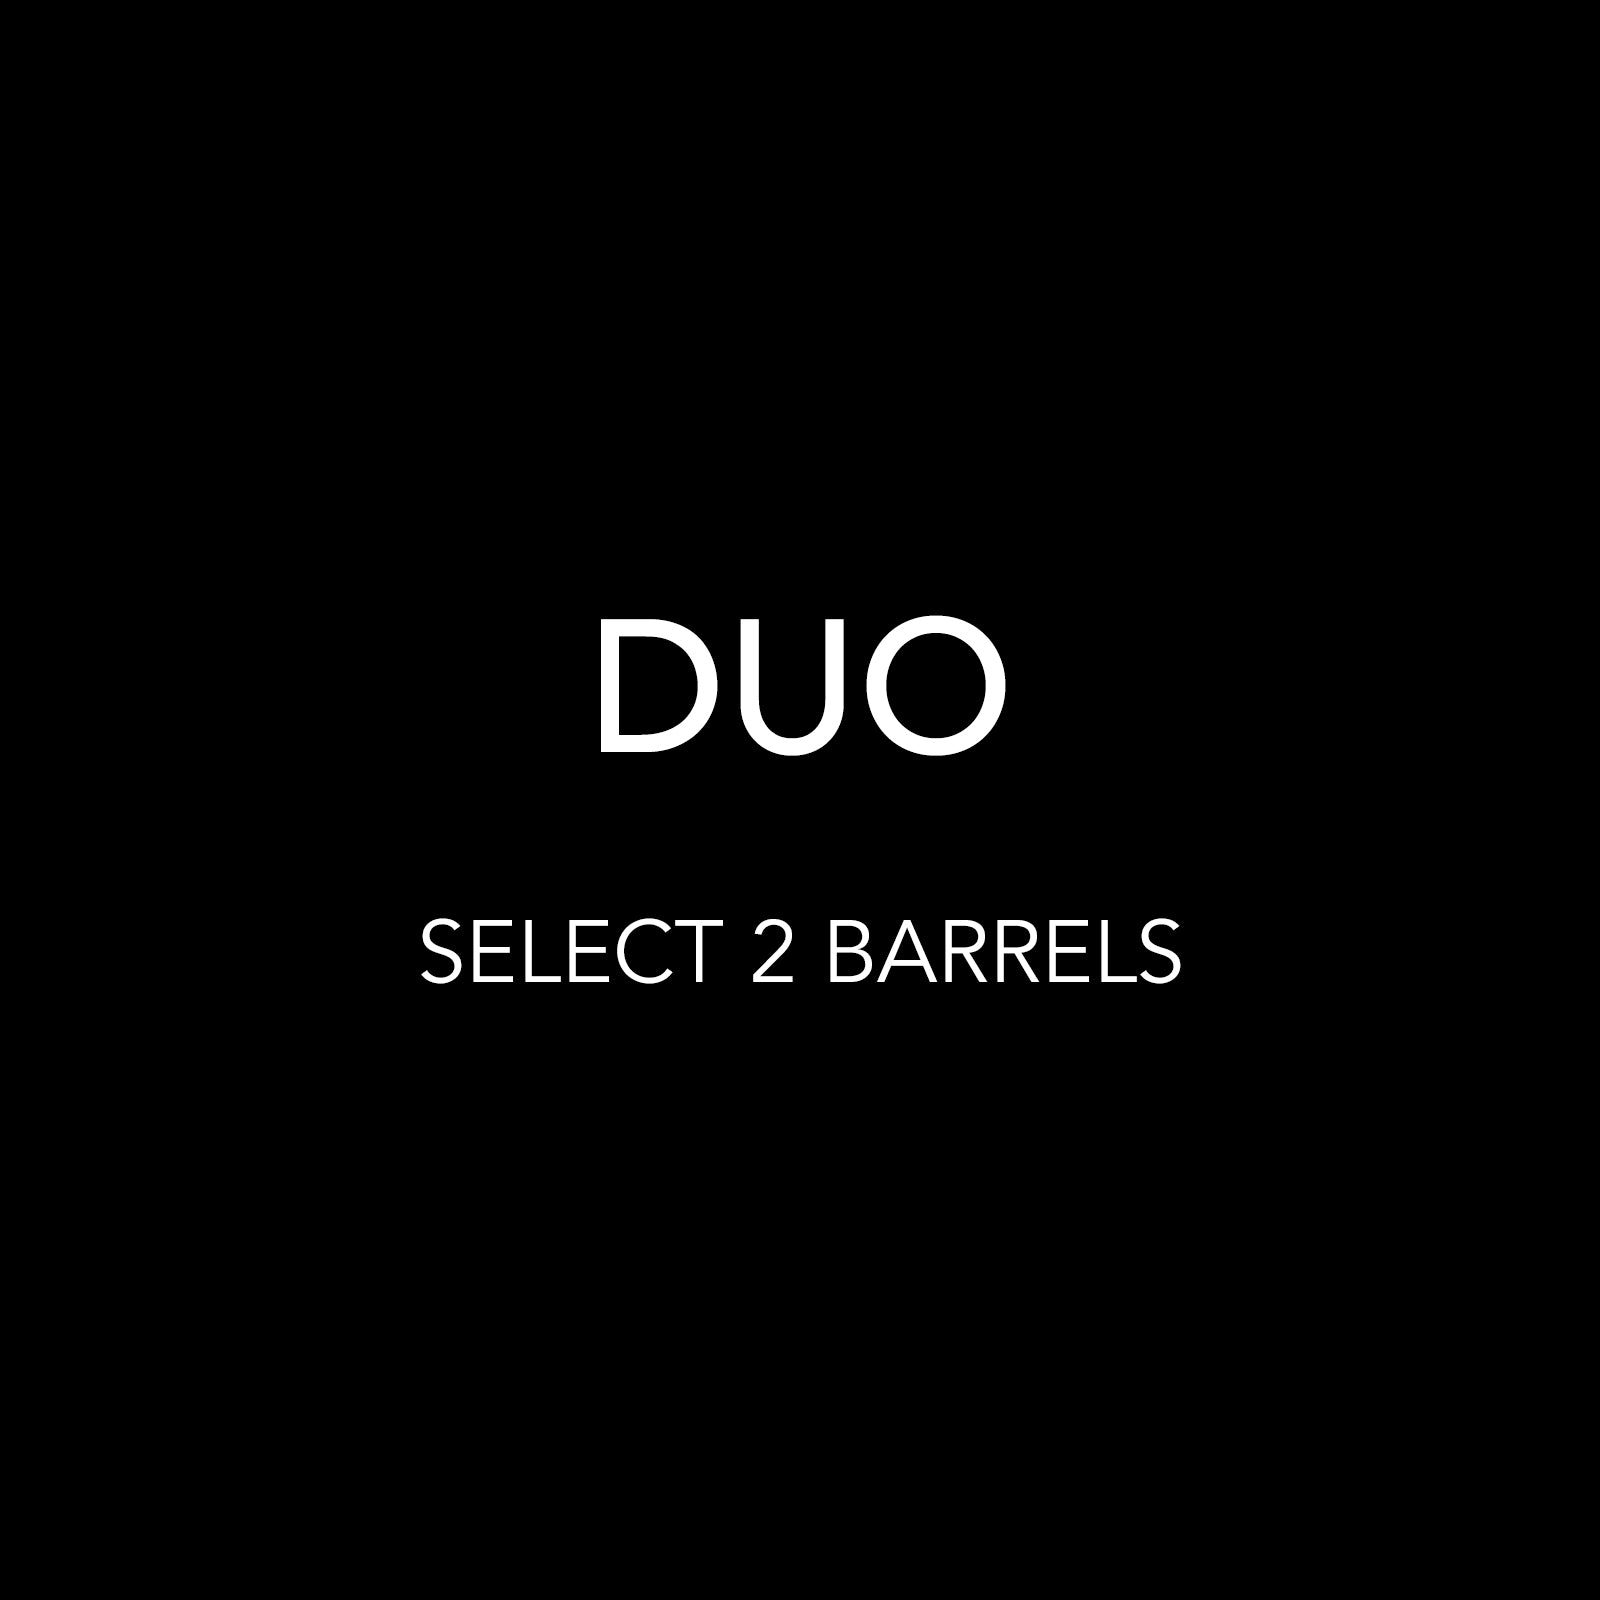 DUO - YOU PICK 2 BARRELS